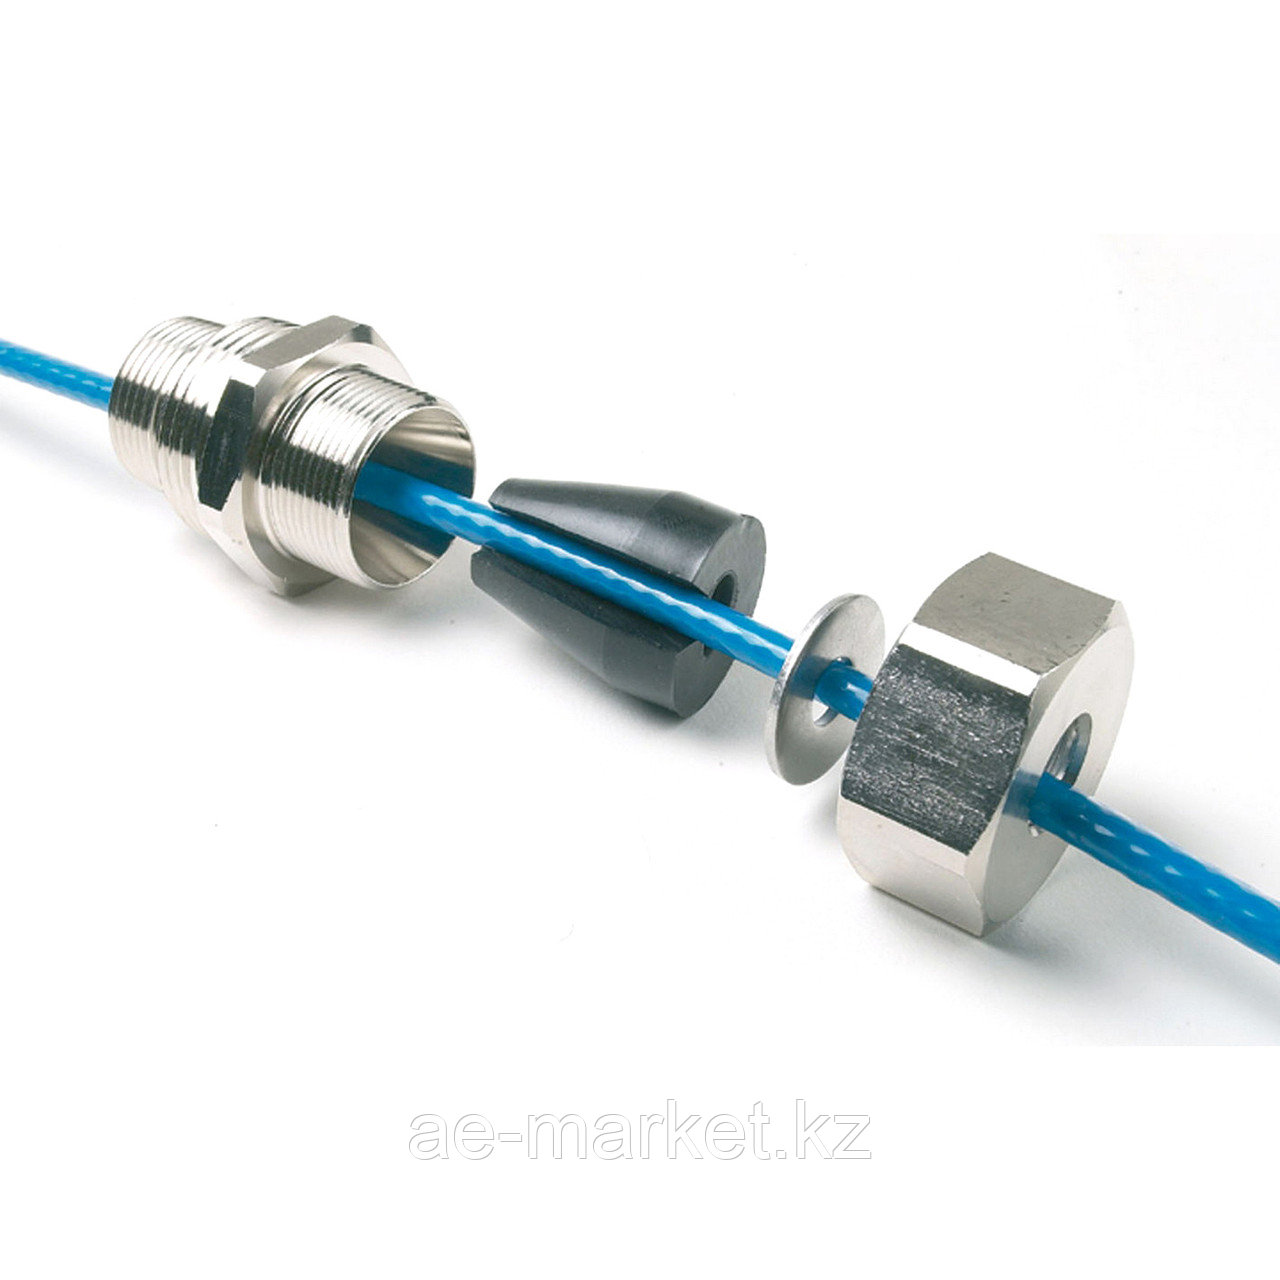 Муфта зажимная для монтажа кабеля внутрь трубы (3/4" и 1") с резьбой